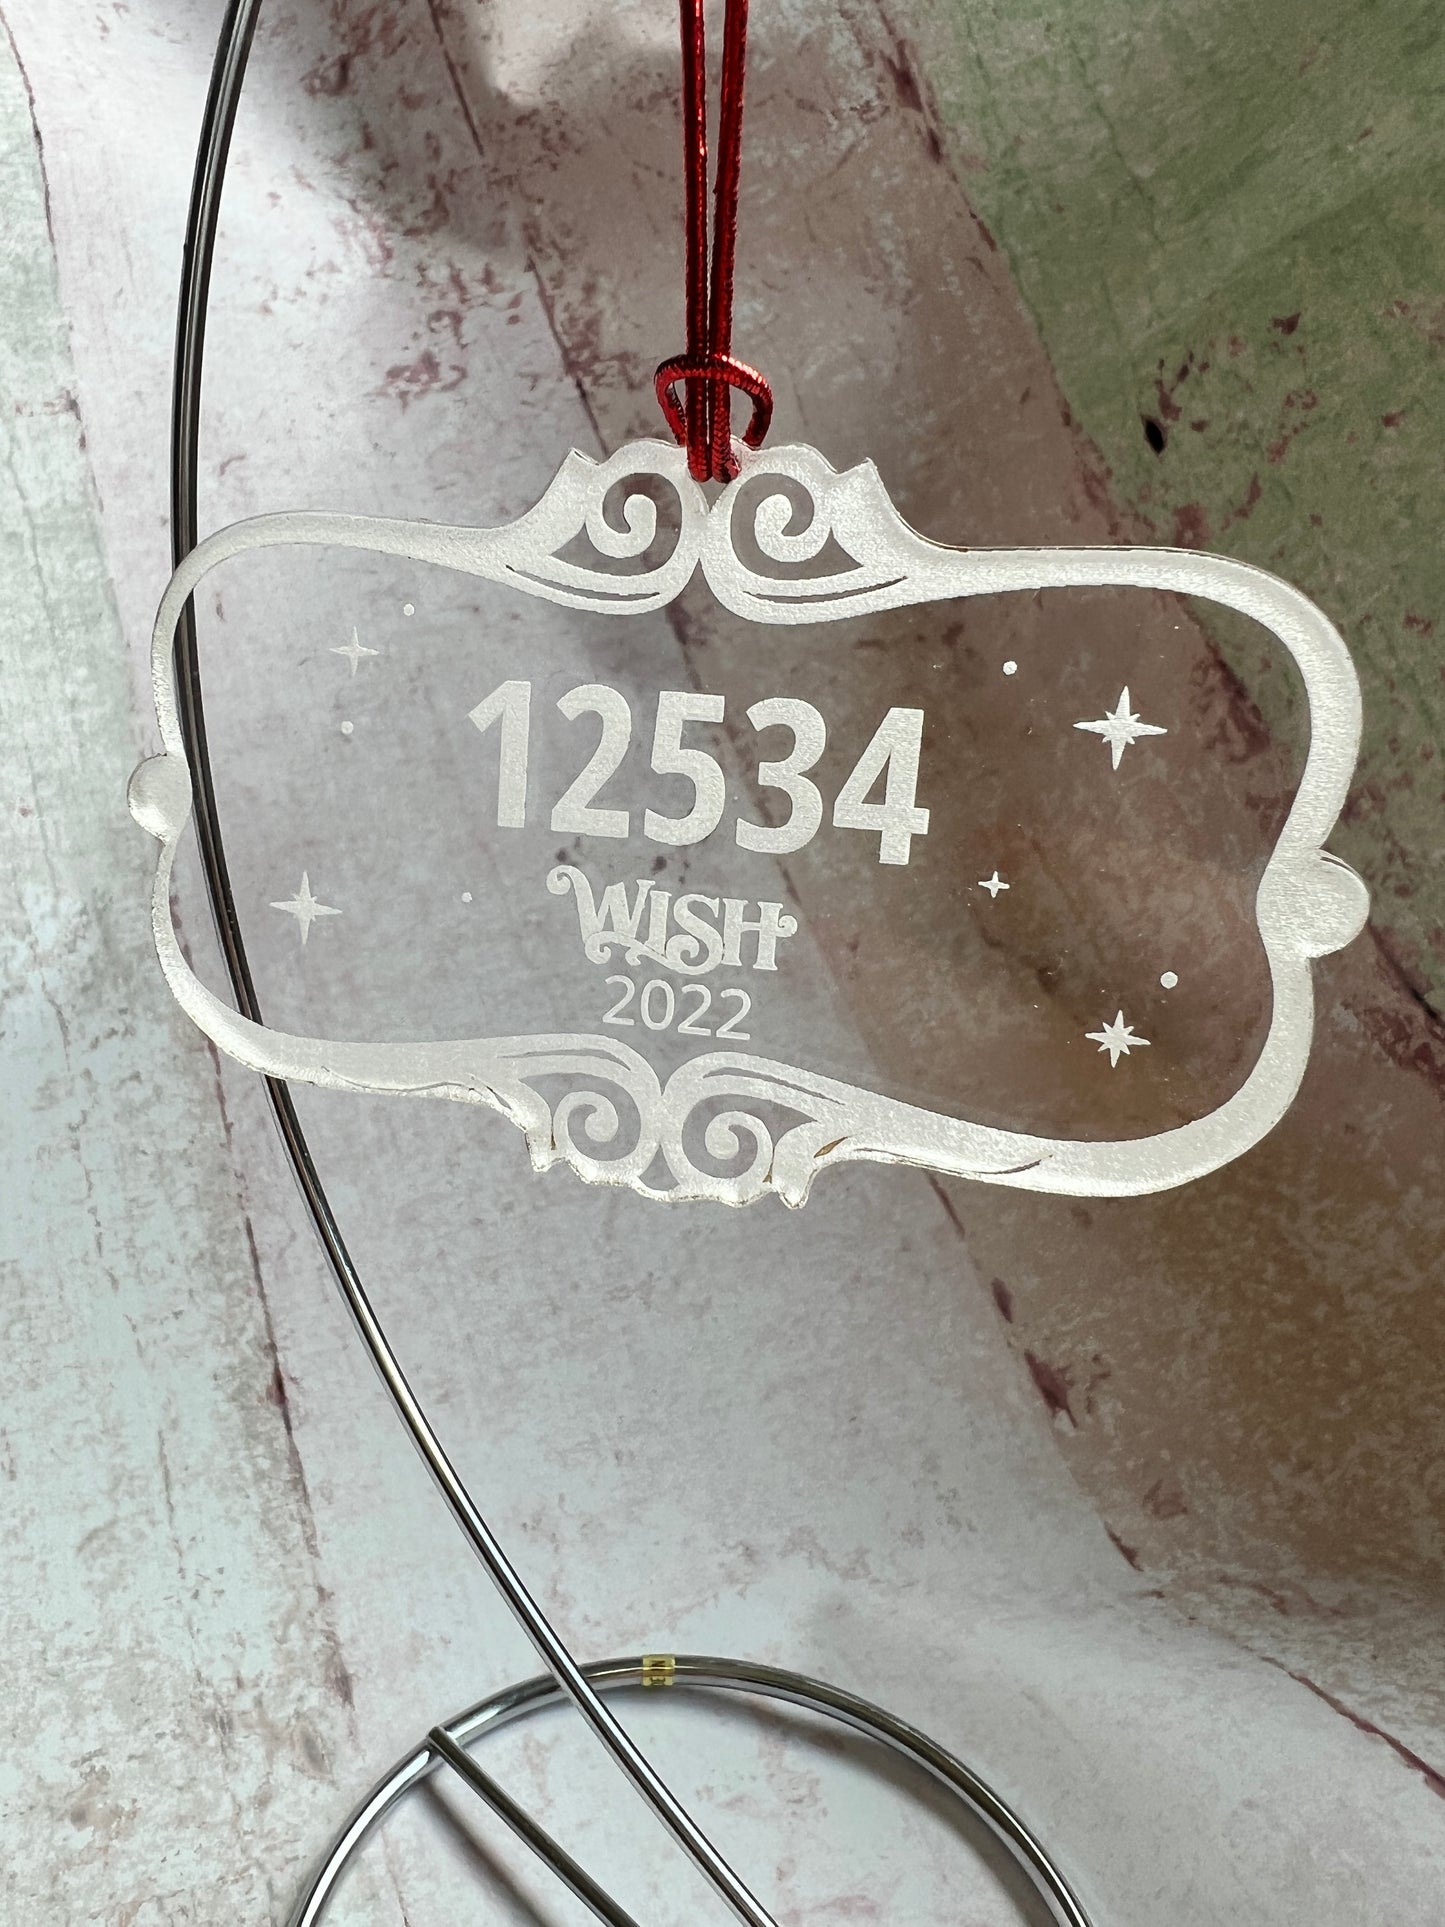 Wish door plate ornament